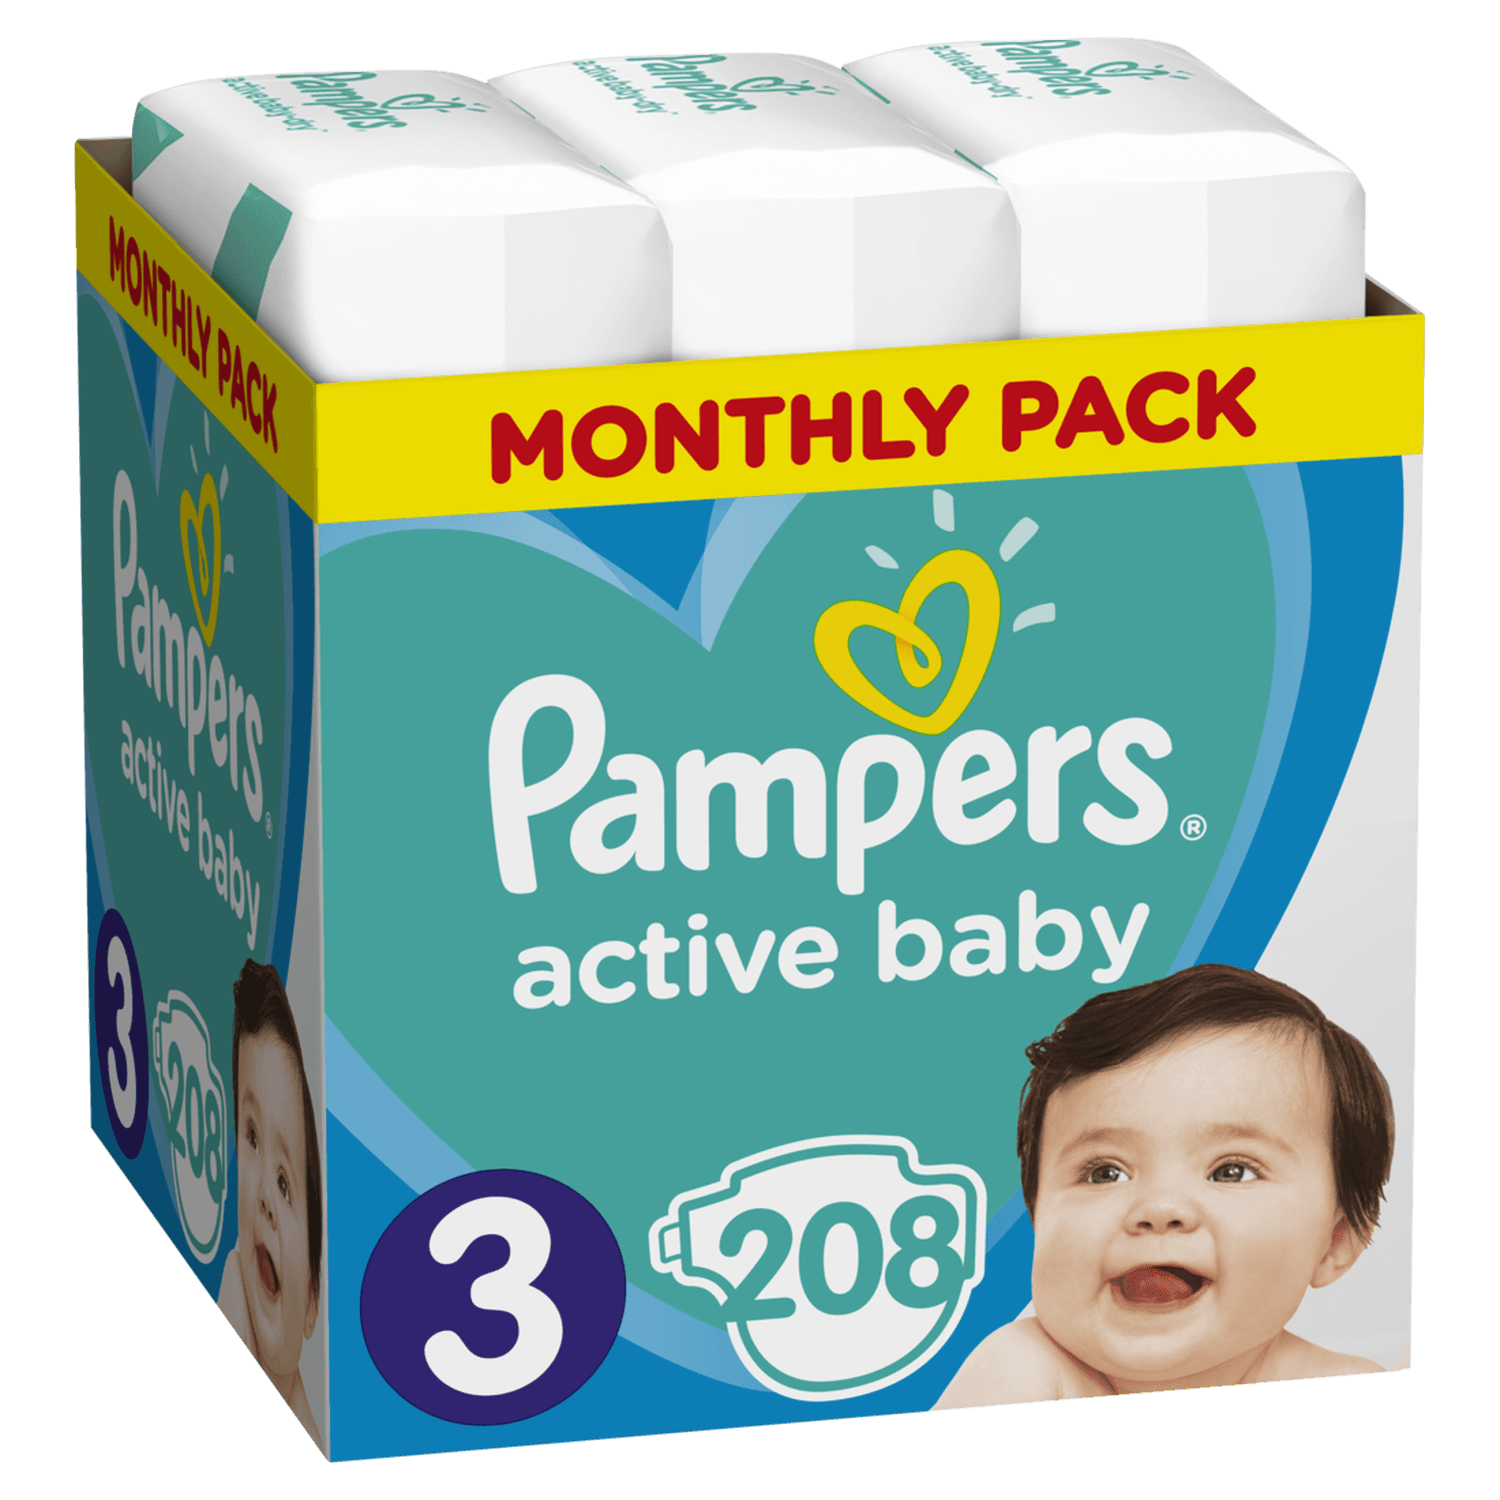 Slike PAMPERS Pelene Monthly pack S3 MSB 208/1